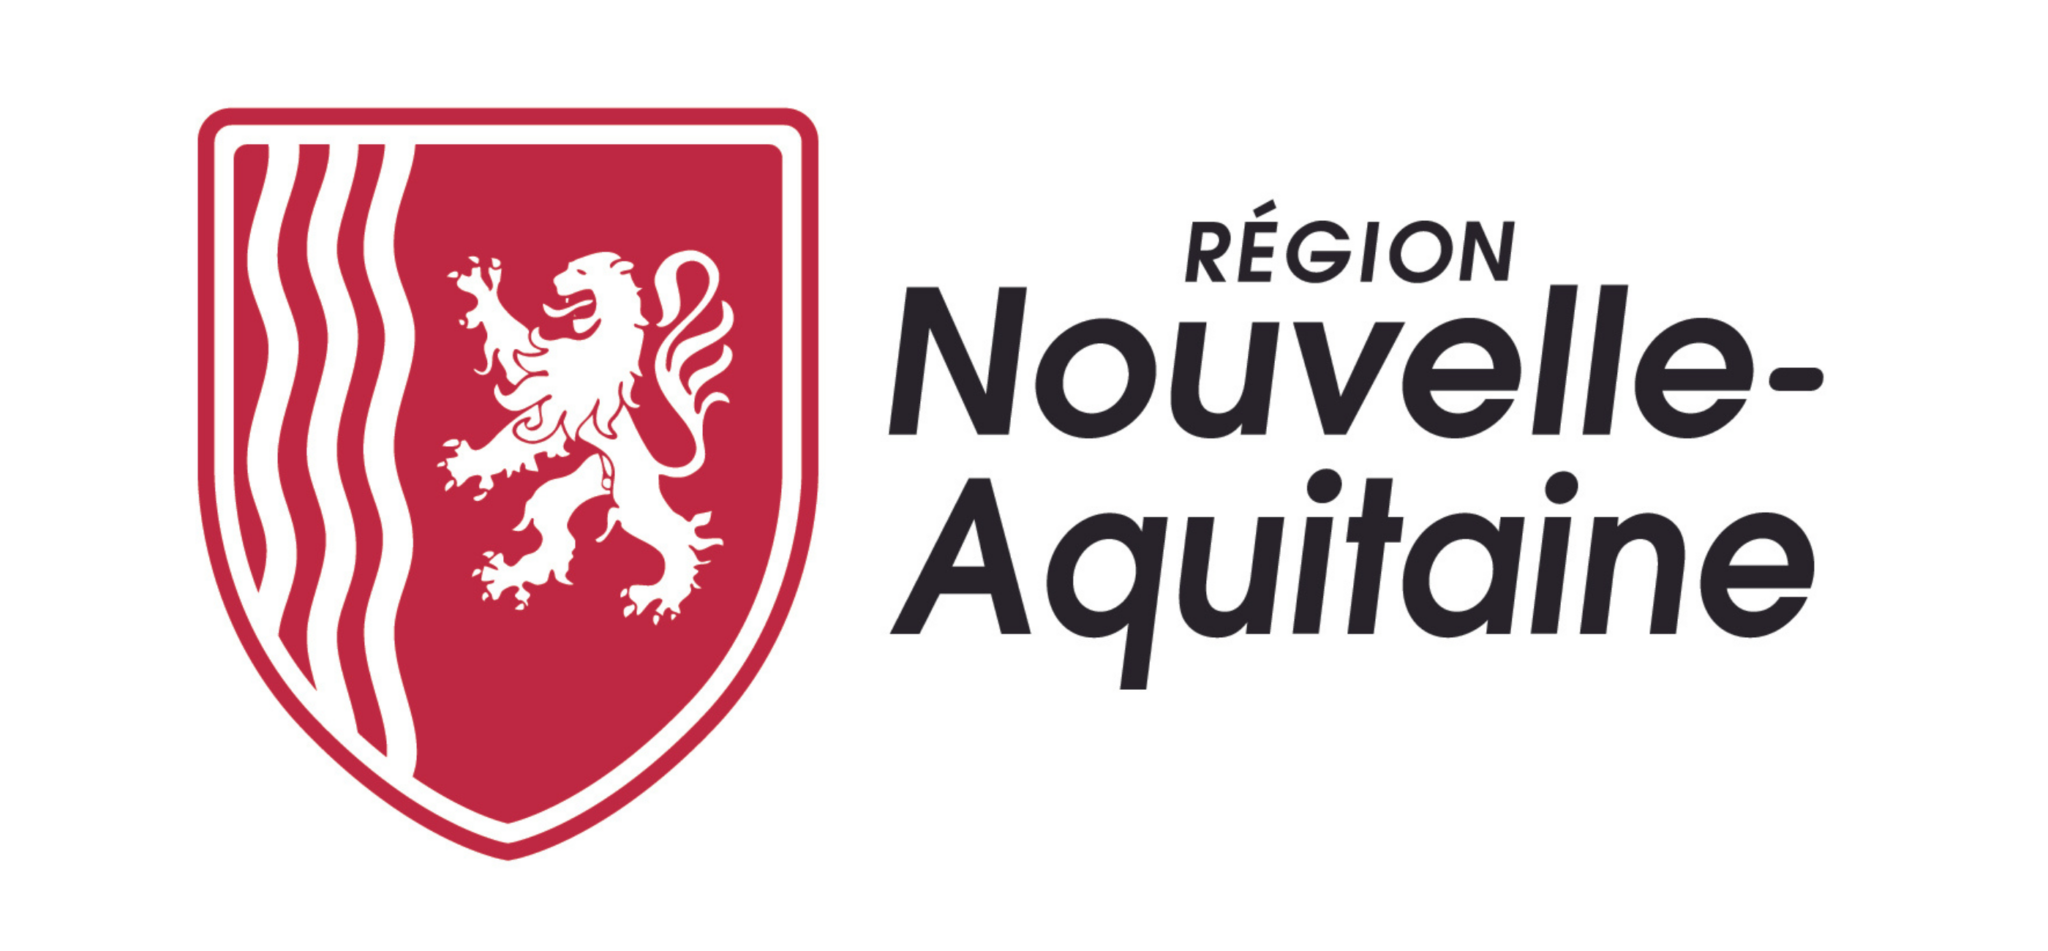 14. Région Nouvelle-Aquitaine